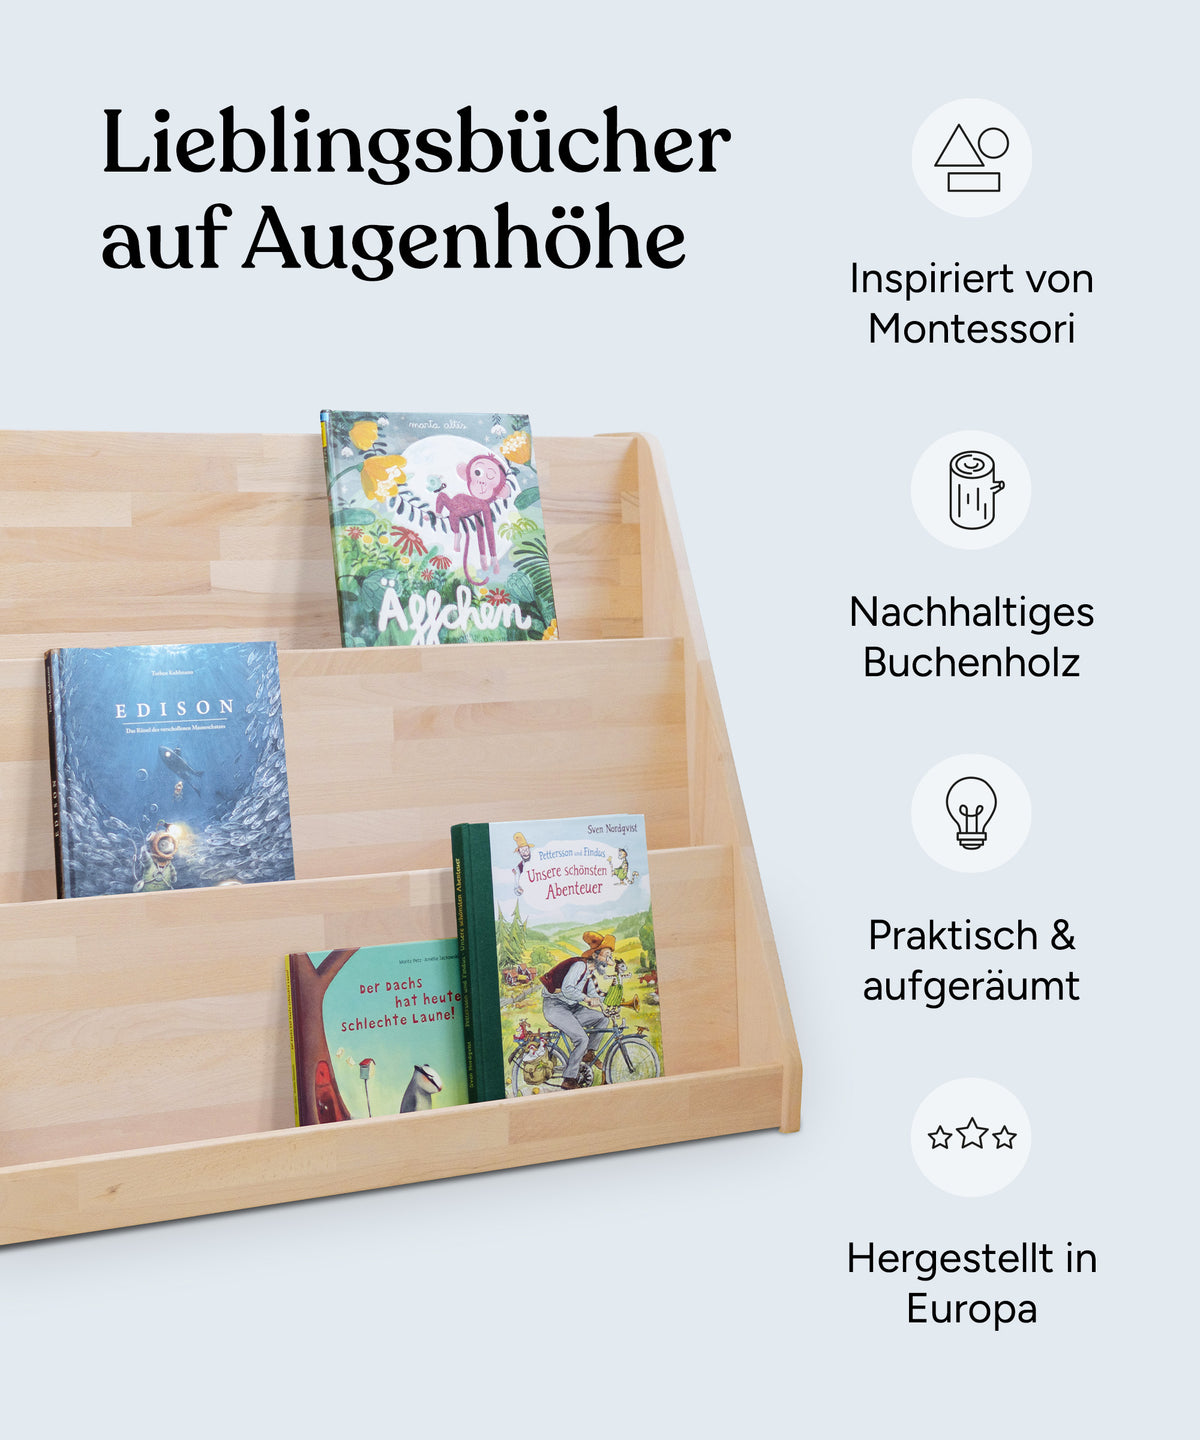 Vorteile Bücherregal: Inspiriert von Montessori, nachhaltiges Buchenholz, praktisch und aufgeräumt, hergestellt in Europa.